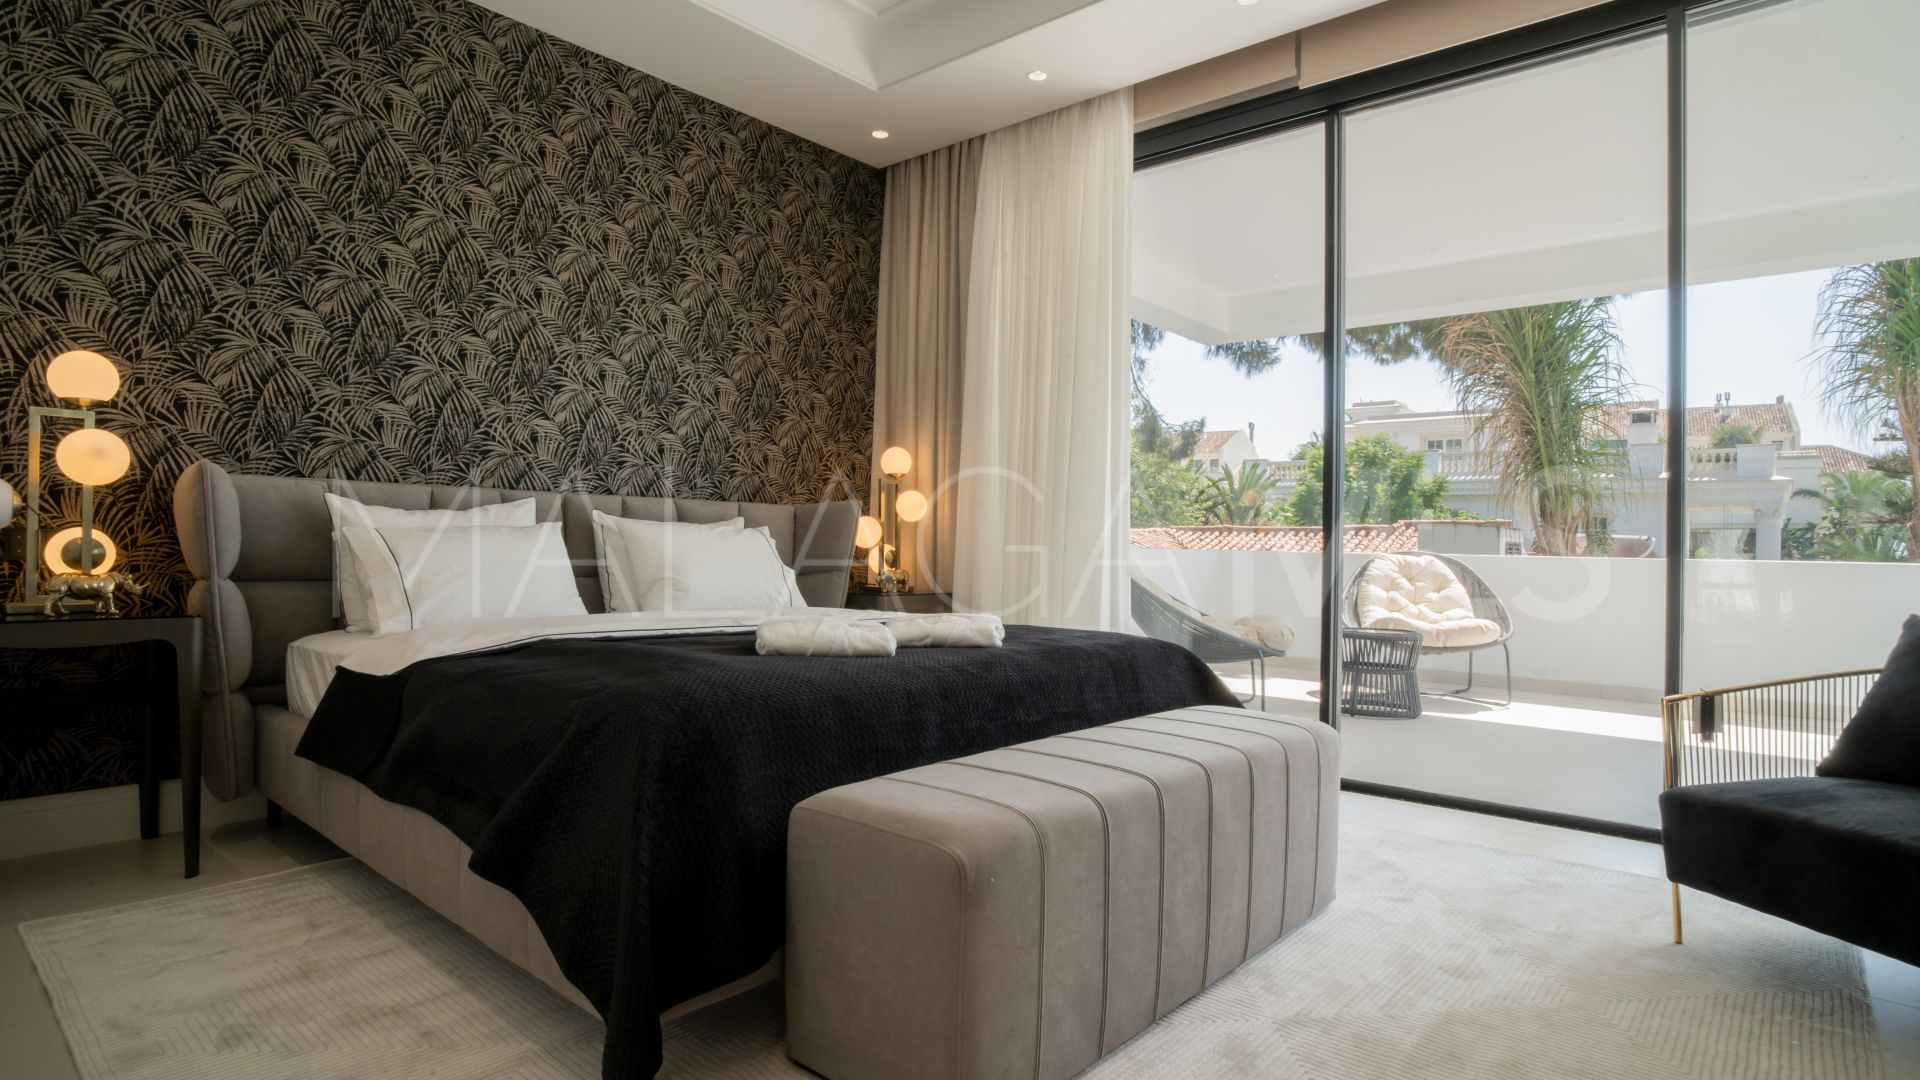 Se vende villa de 4 bedrooms in Rio Verde